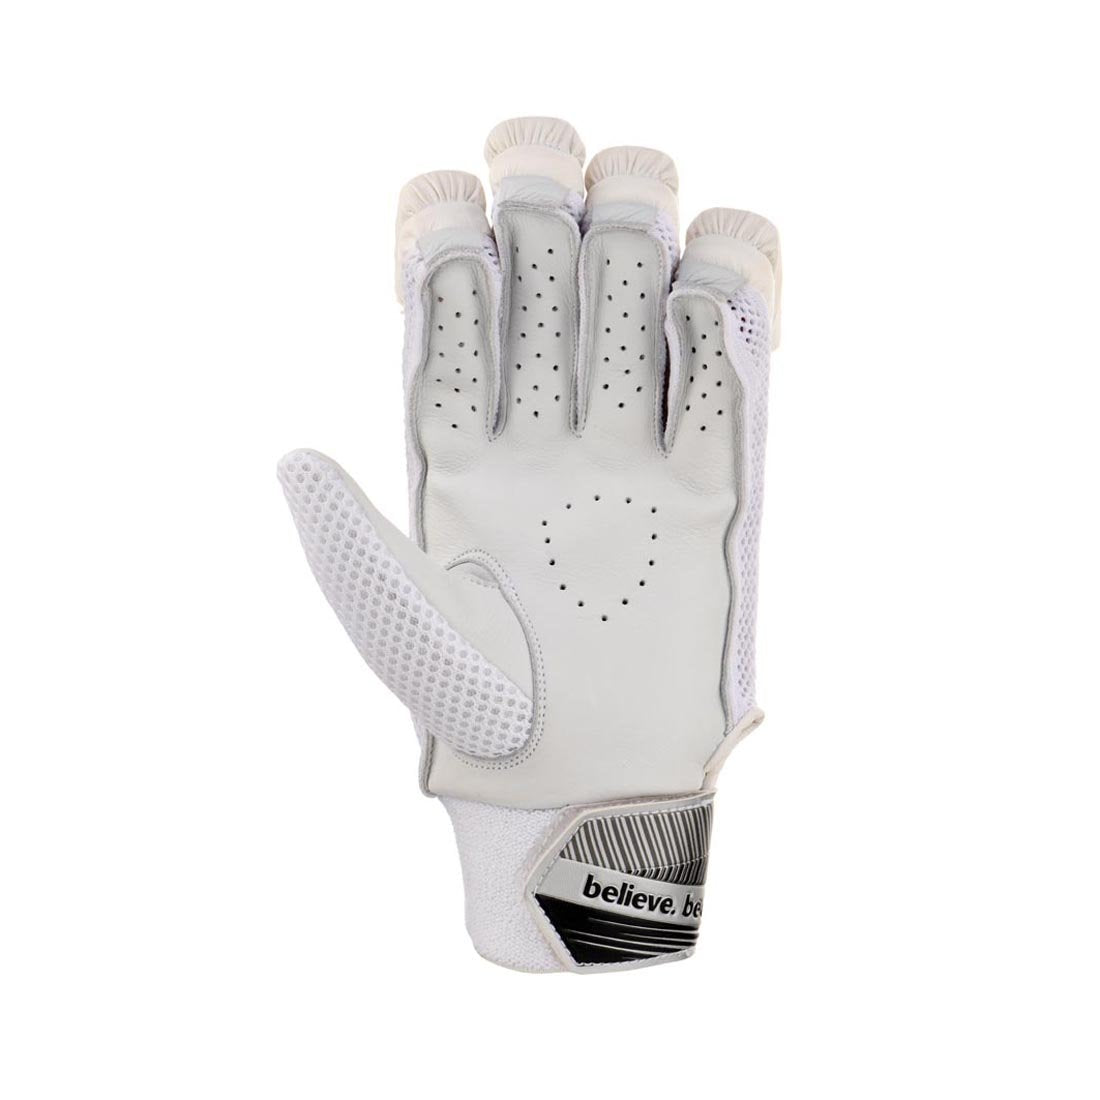 SG Litevate White Junior / Youth Cricket Gloves